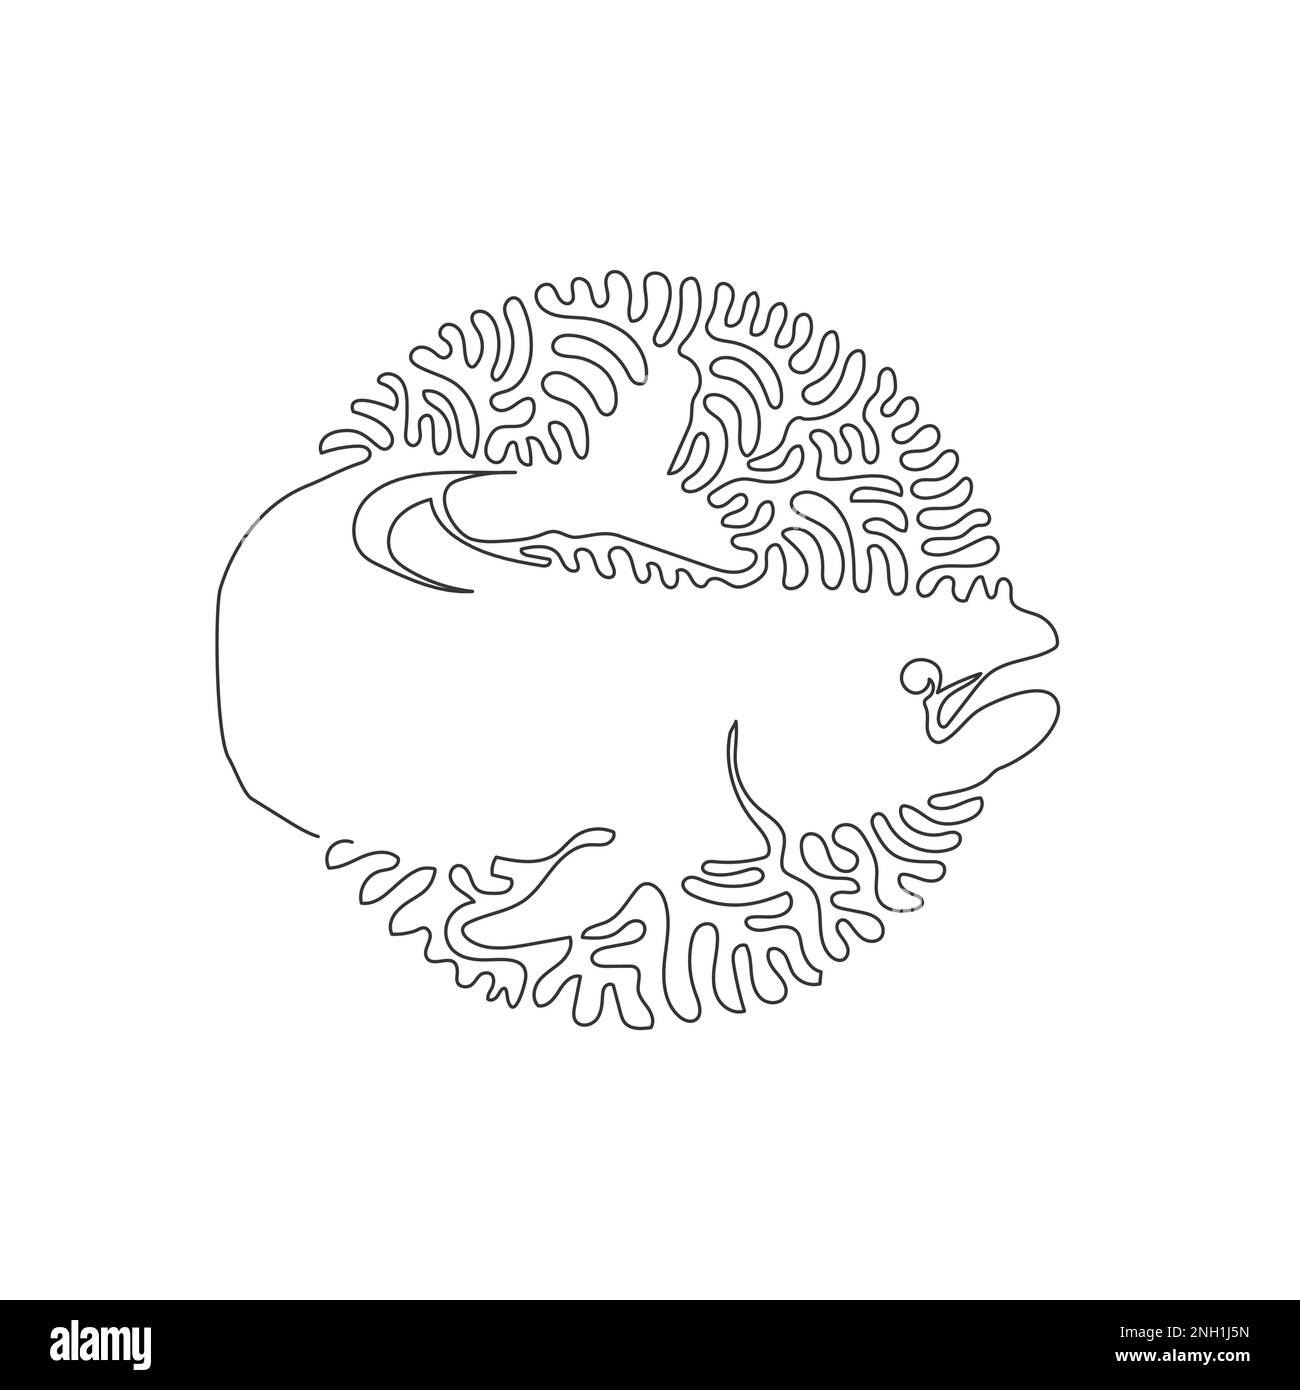 Simple curly un dessin d'art abstrait de saumon exotique Dessin de ligne continue illustration vectorielle du saumon meilleur poisson dans la mer Illustration de Vecteur